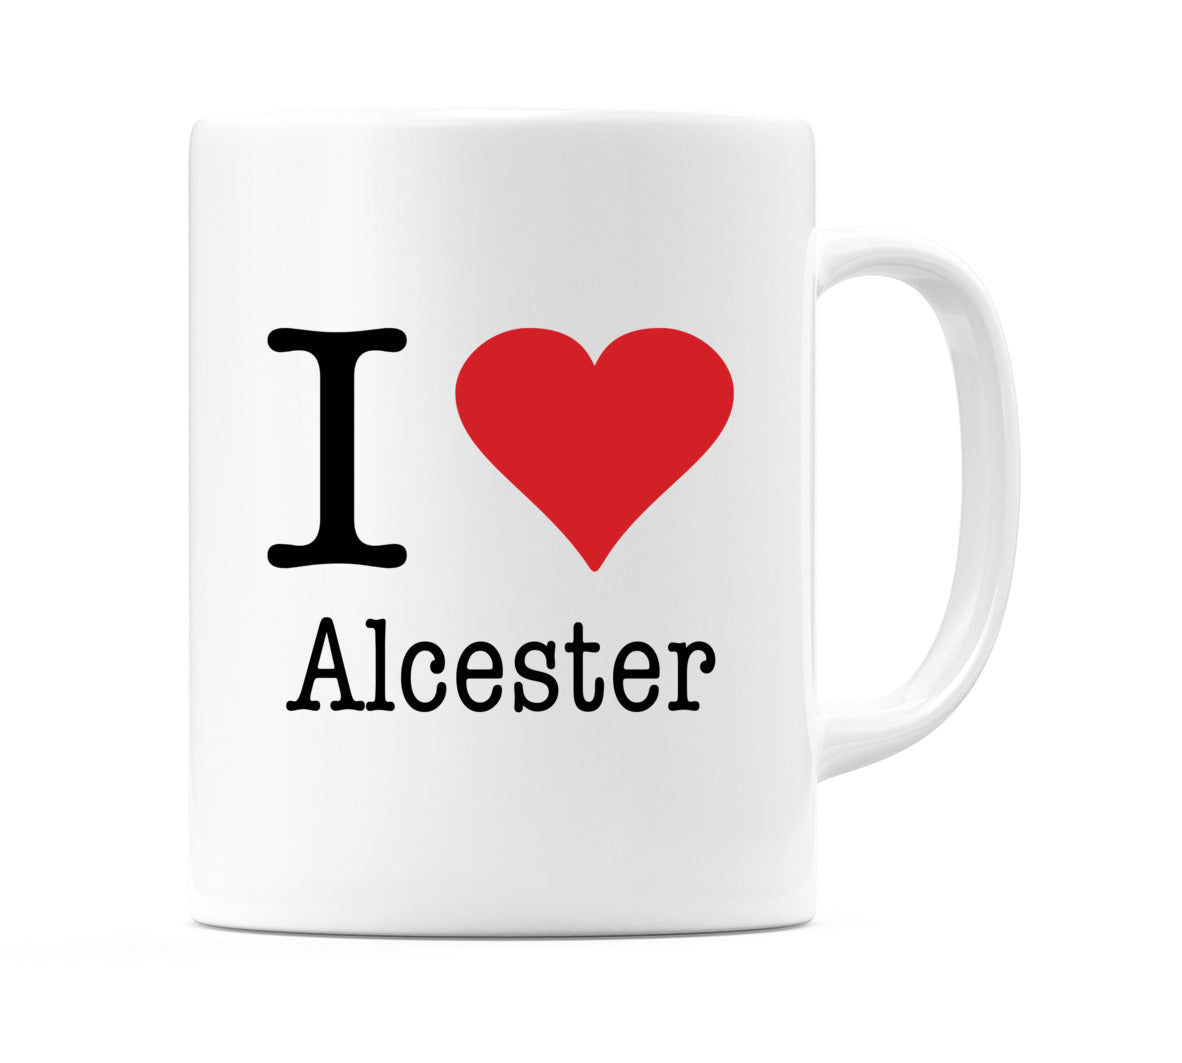 I Love Alcester Mug